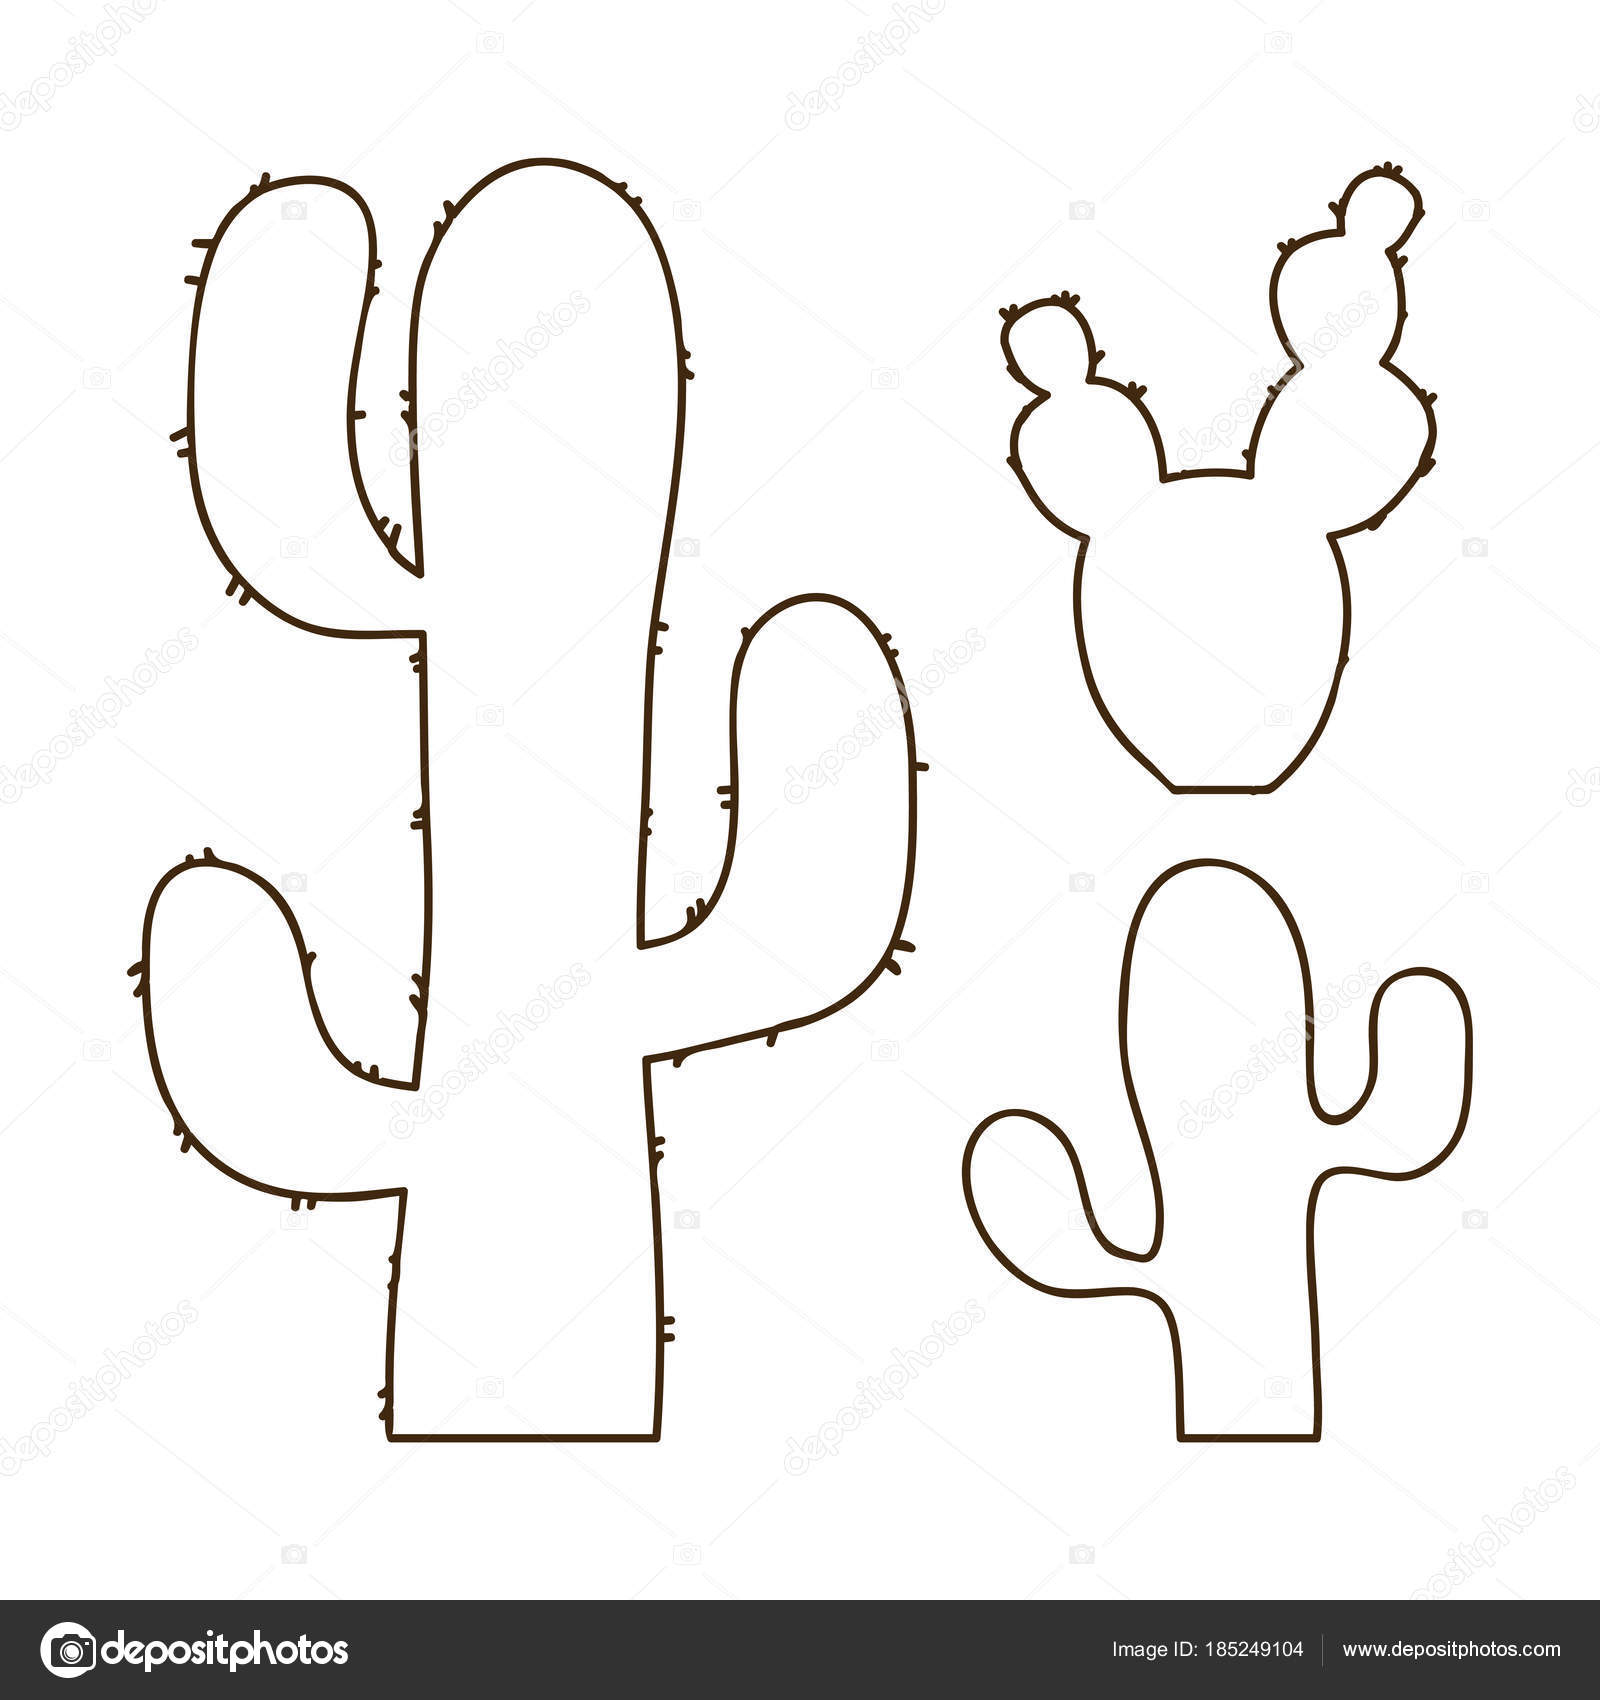 Conjunto de cactos em estilo simples de desenho animado isolado no fundo  branco. cactus em vasos e flores. cacto